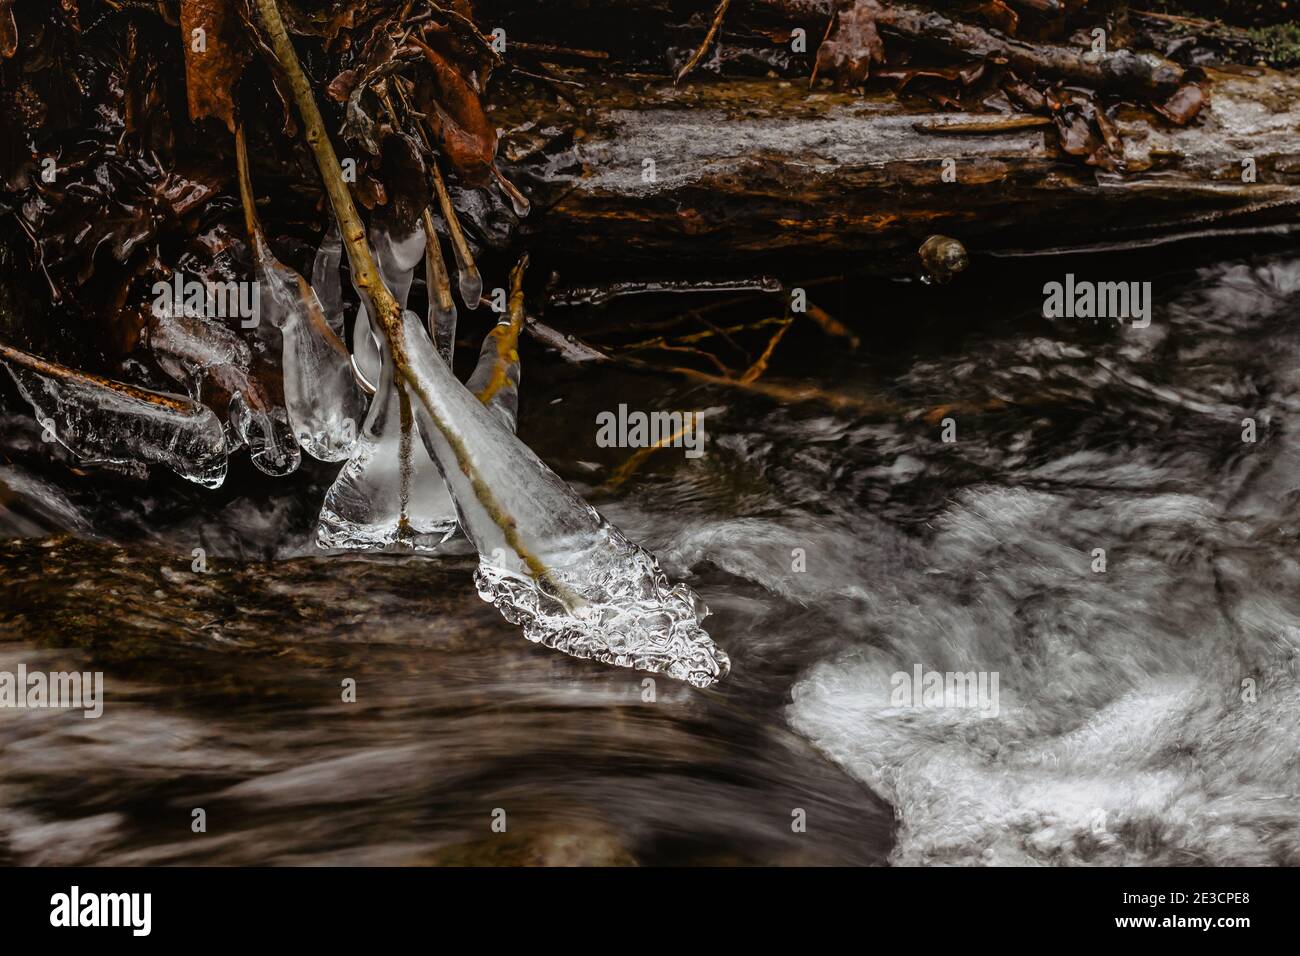 Nahaufnahme von Eiszapfen in der Nähe von wilden Strom.Snowy Winterlandschaft.Eiszapfen in Natur Eis Hintergrund.kalt rutschigen saisonalen Wetter. Reihe von frostigen Eiszapfen. Stockfoto